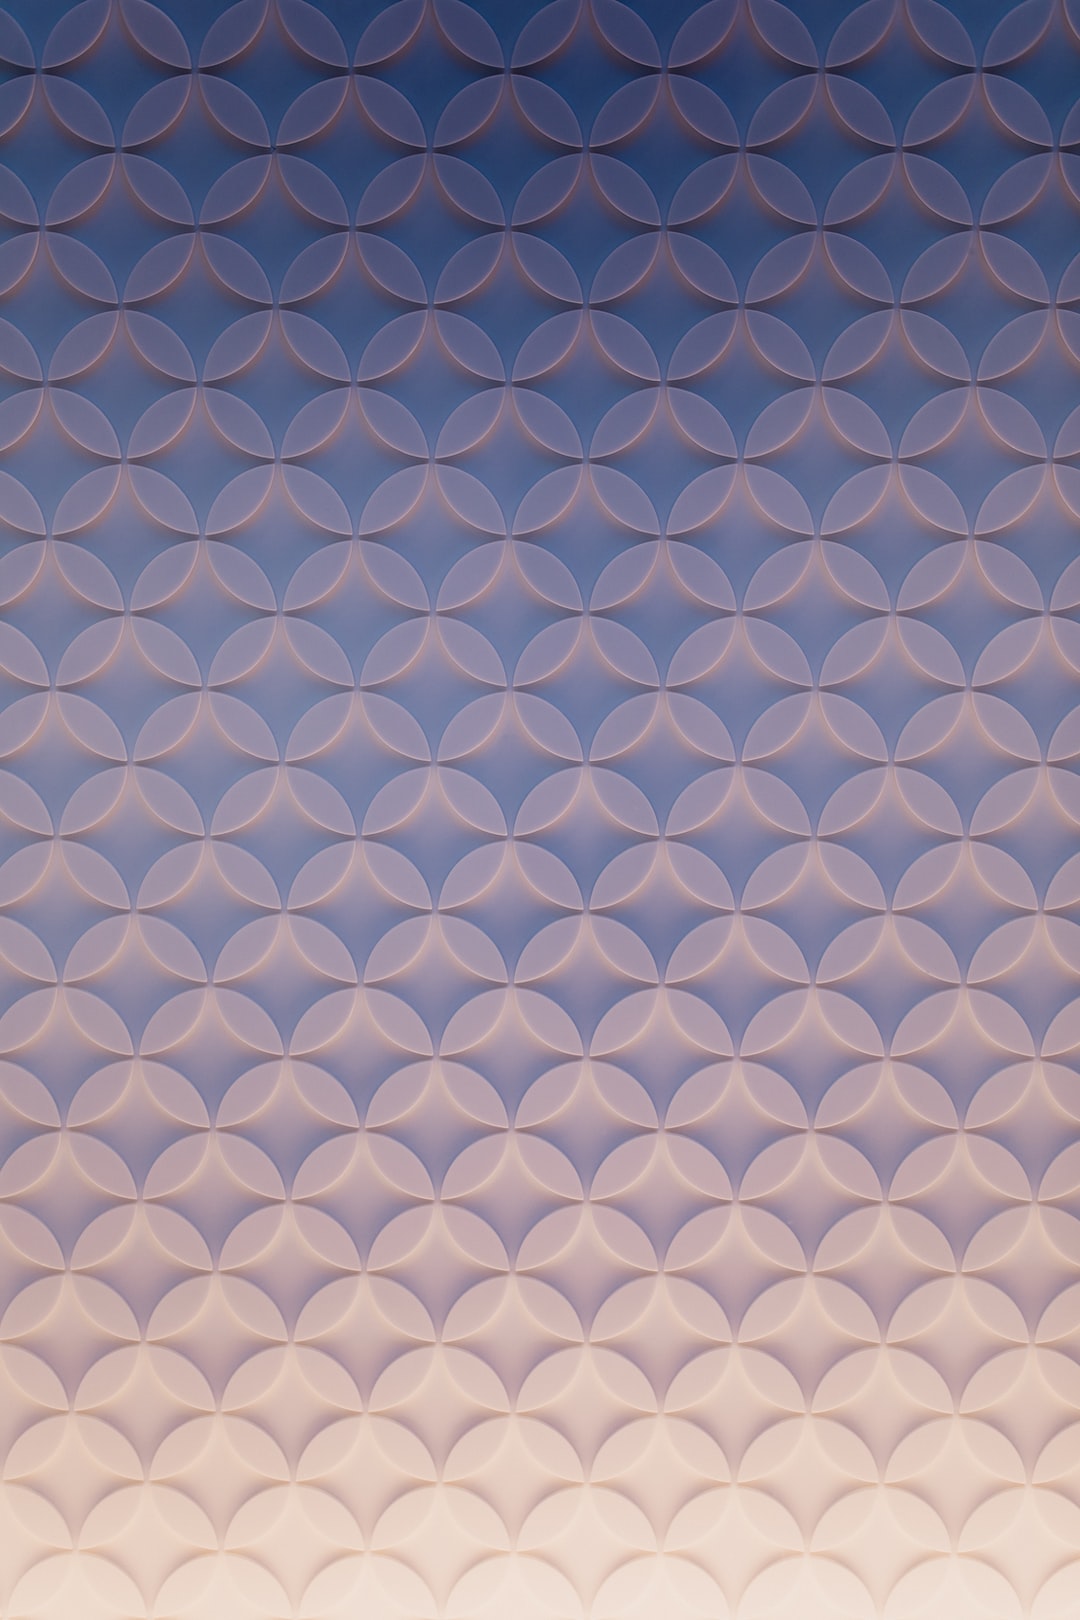 Pattern Wallpaper: Free HD Download [HQ]